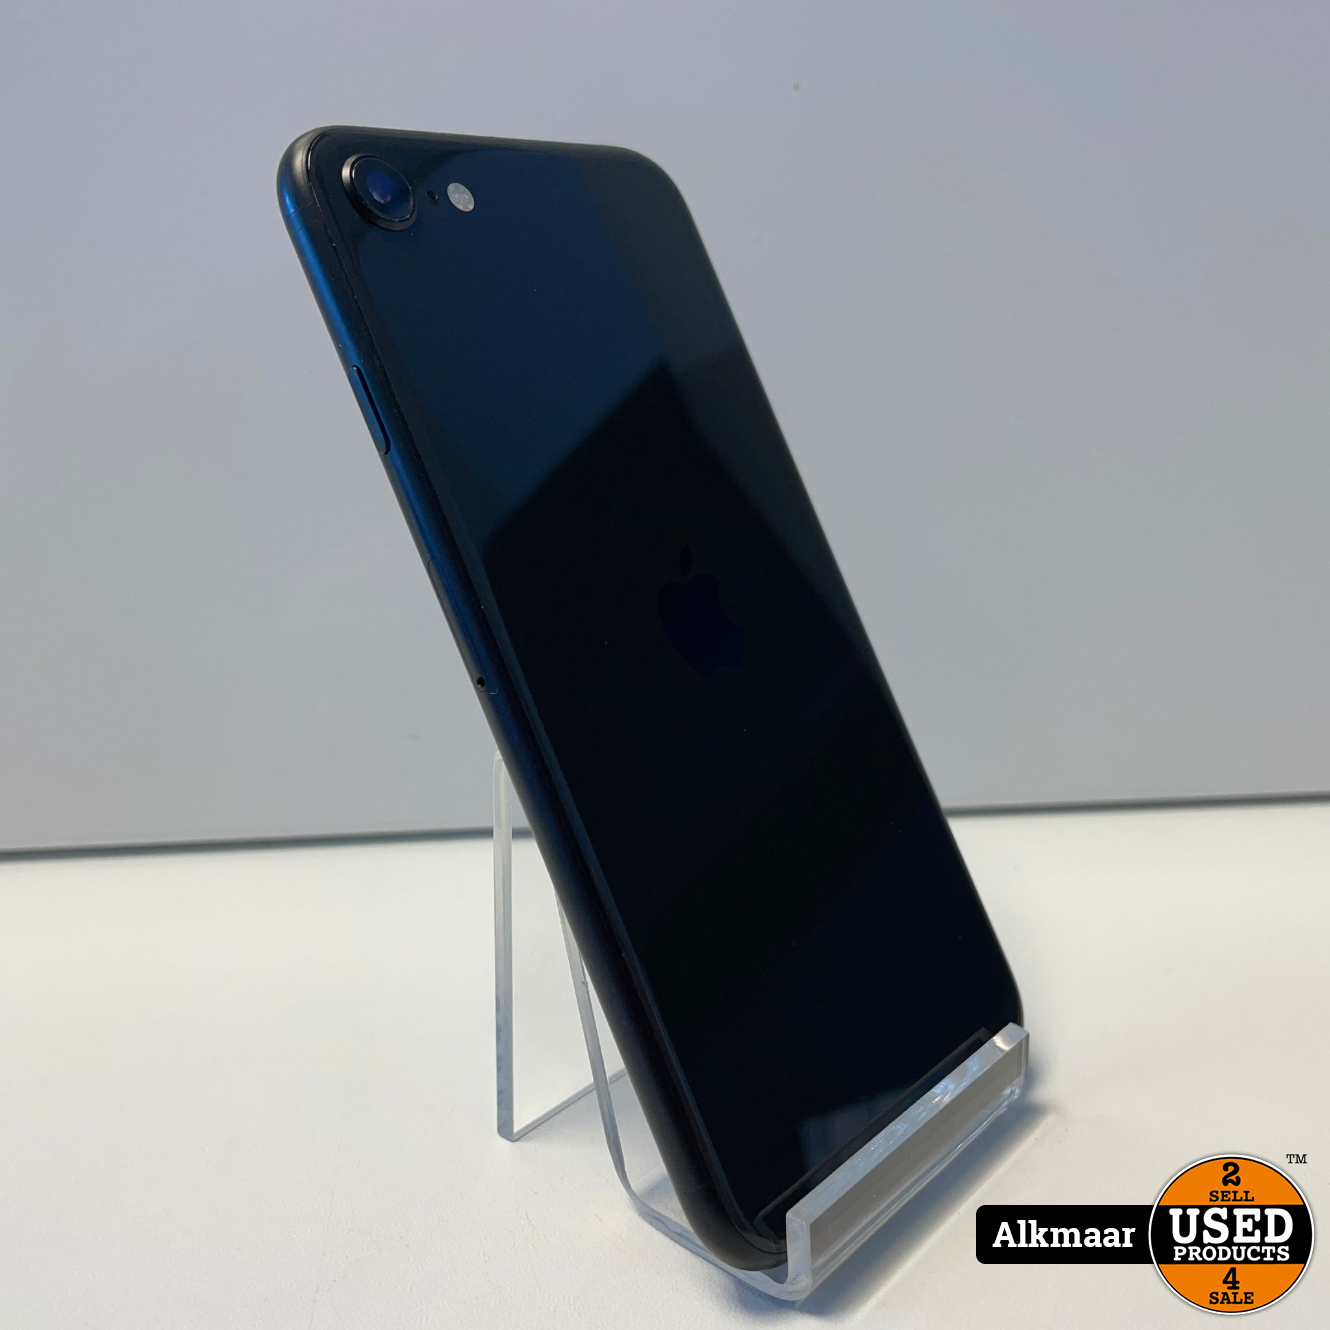 Disco Blij Niet genoeg Apple iPhone SE 2020 64GB Zwart | 94% - Used Products Alkmaar